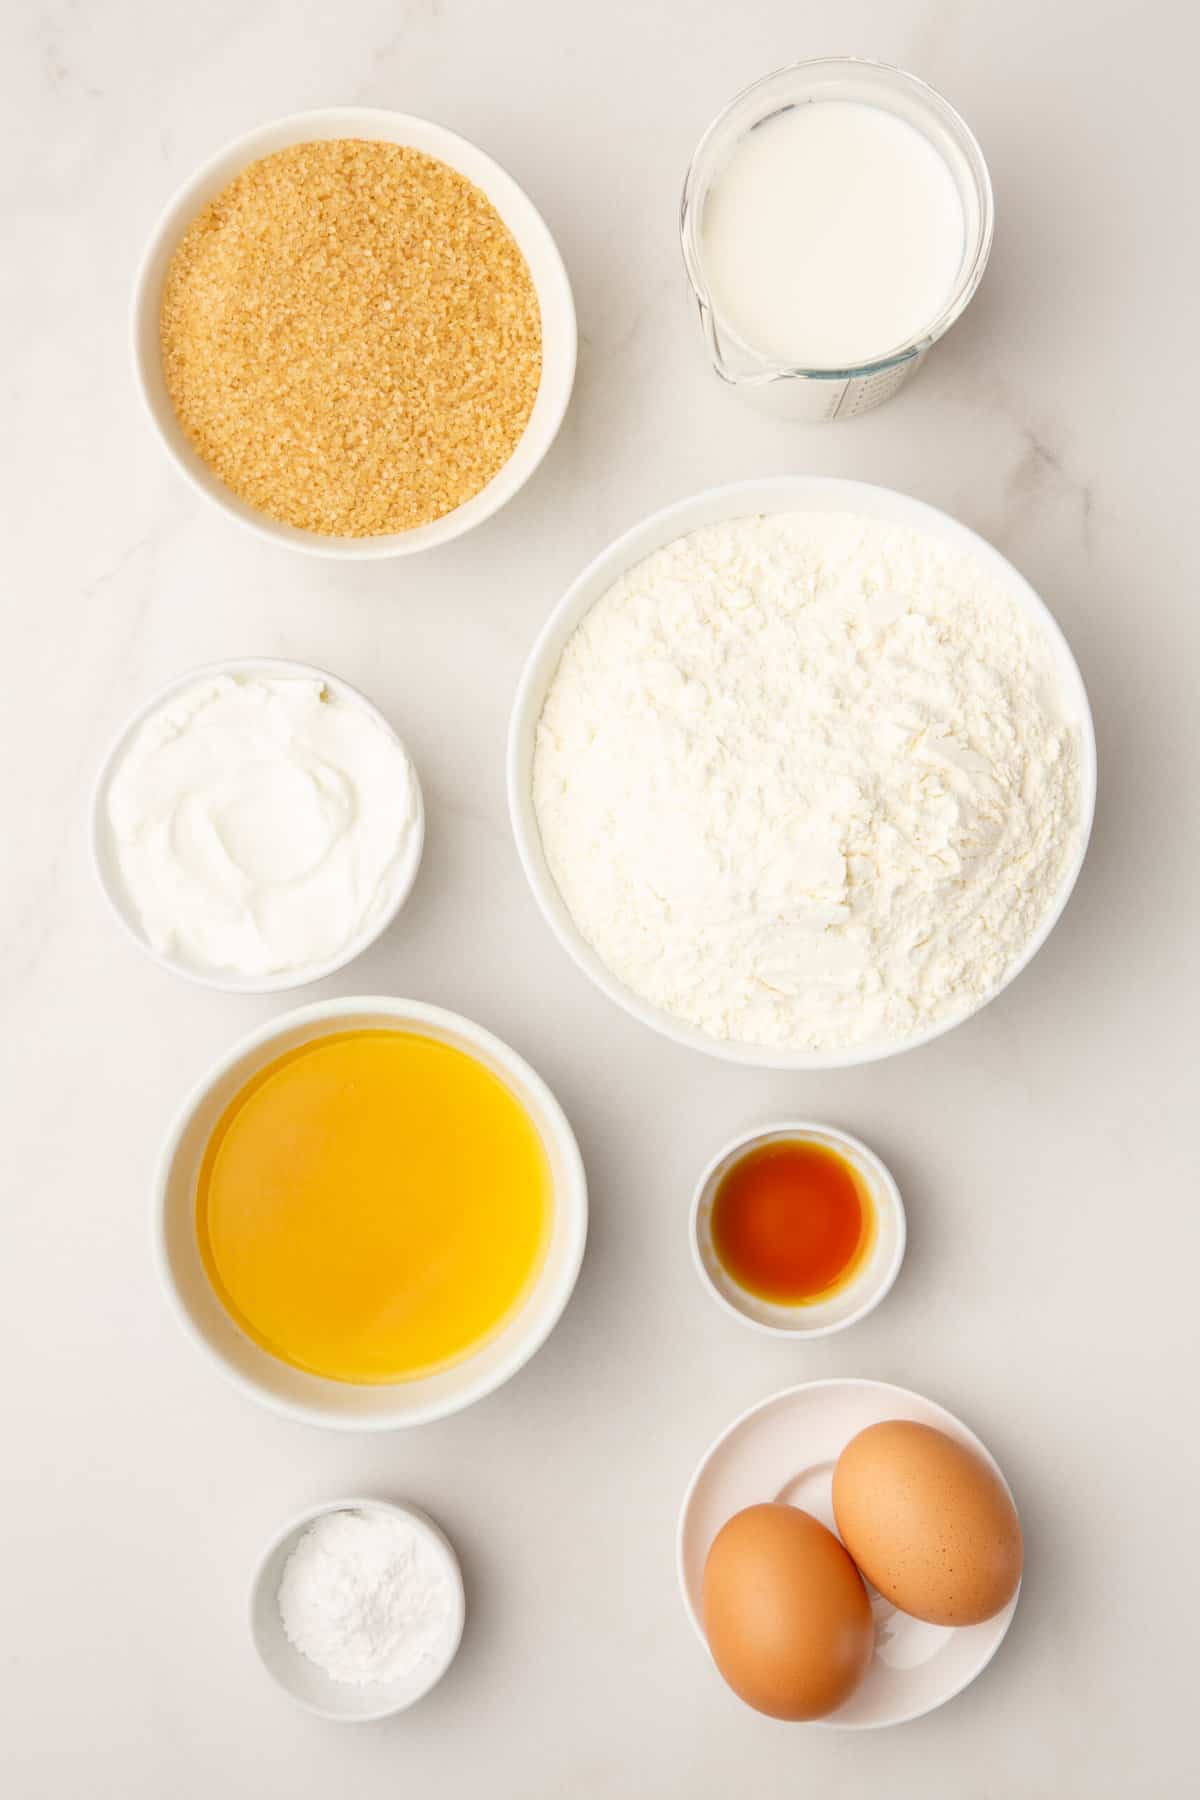 ingredients to make vanilla cake batter